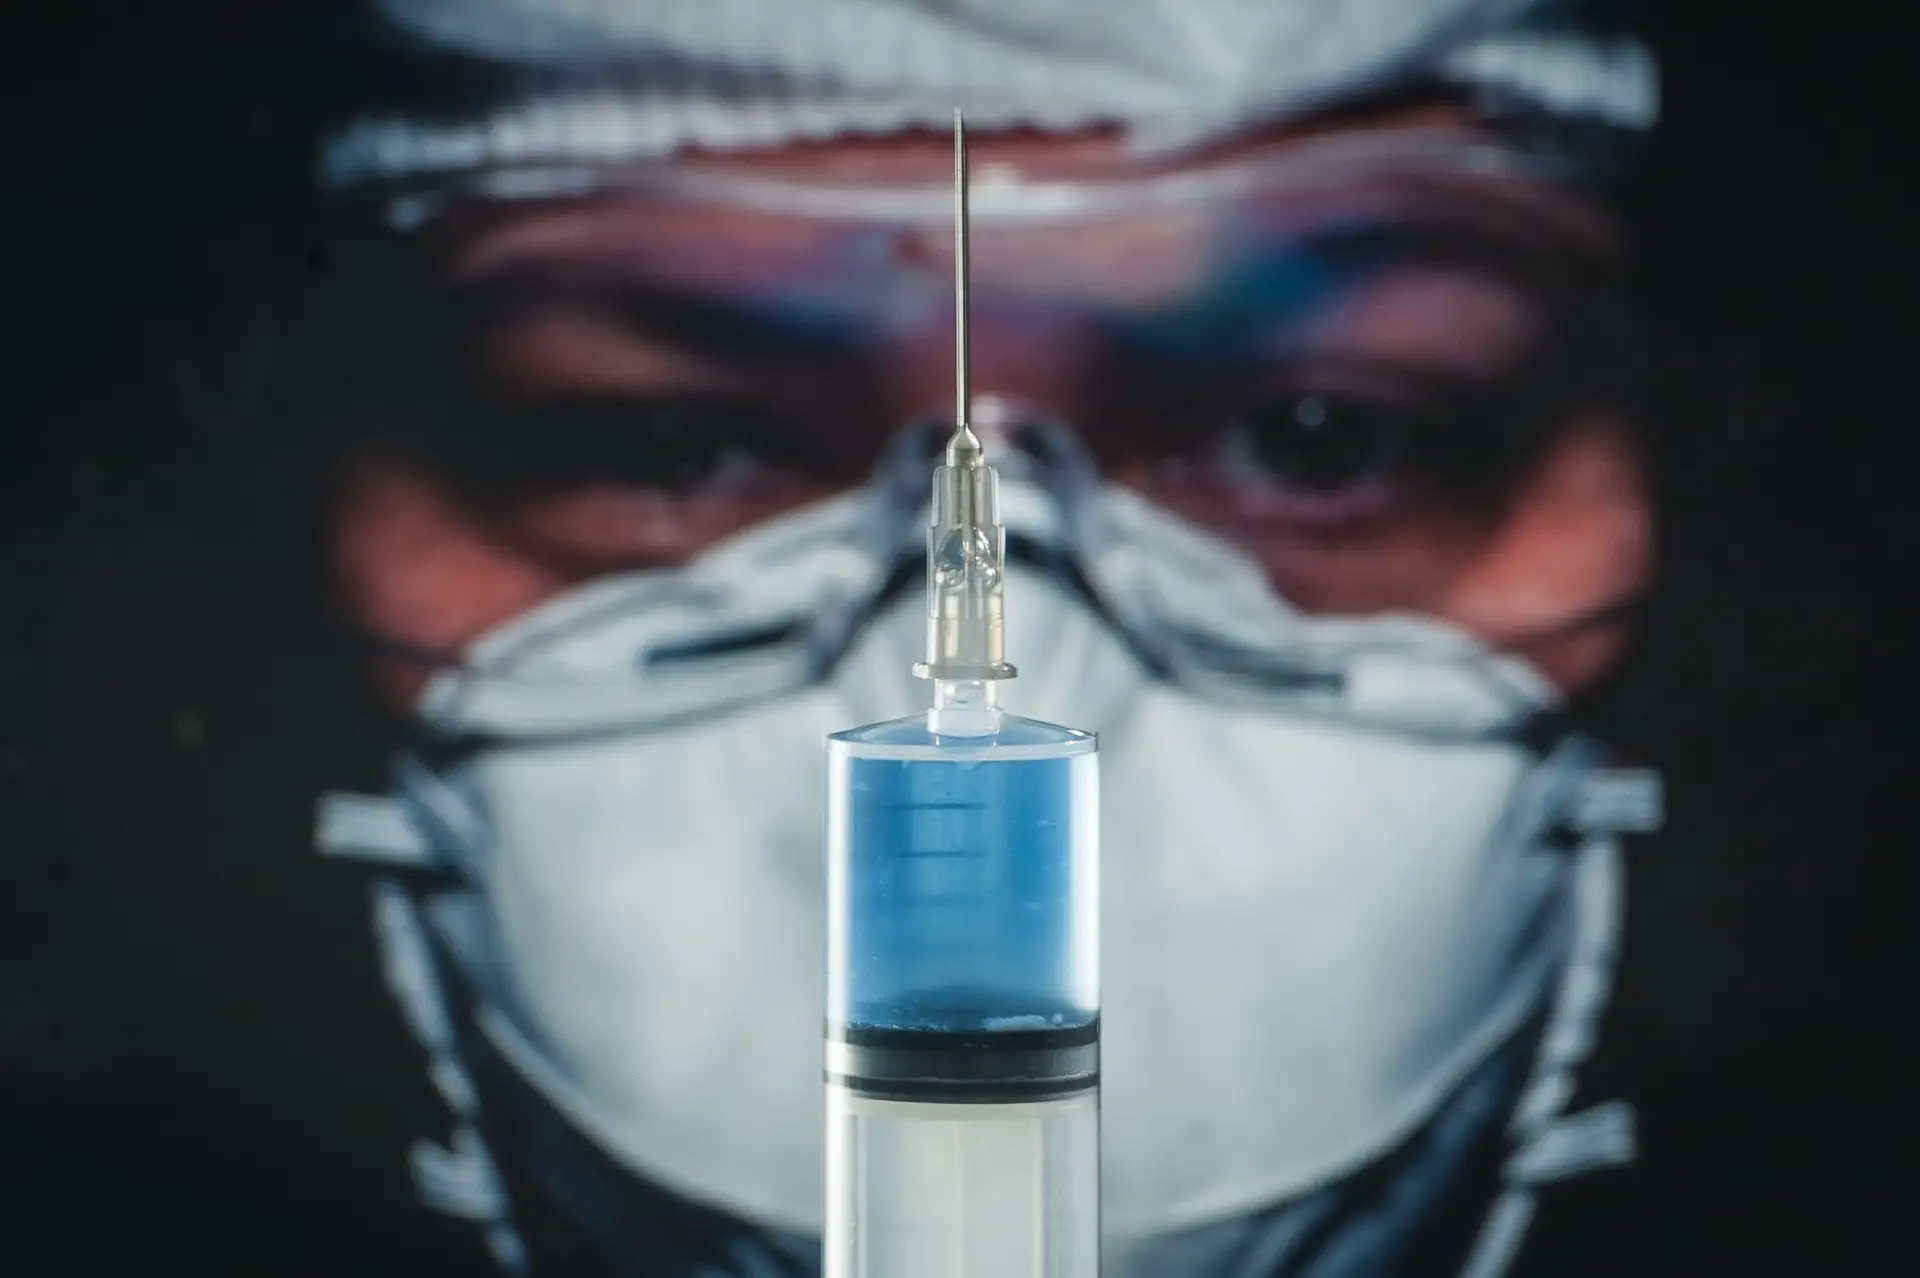 Lóbi das farmacêuticas quer proteção da UE caso as vacinas da covid-19 corram mal